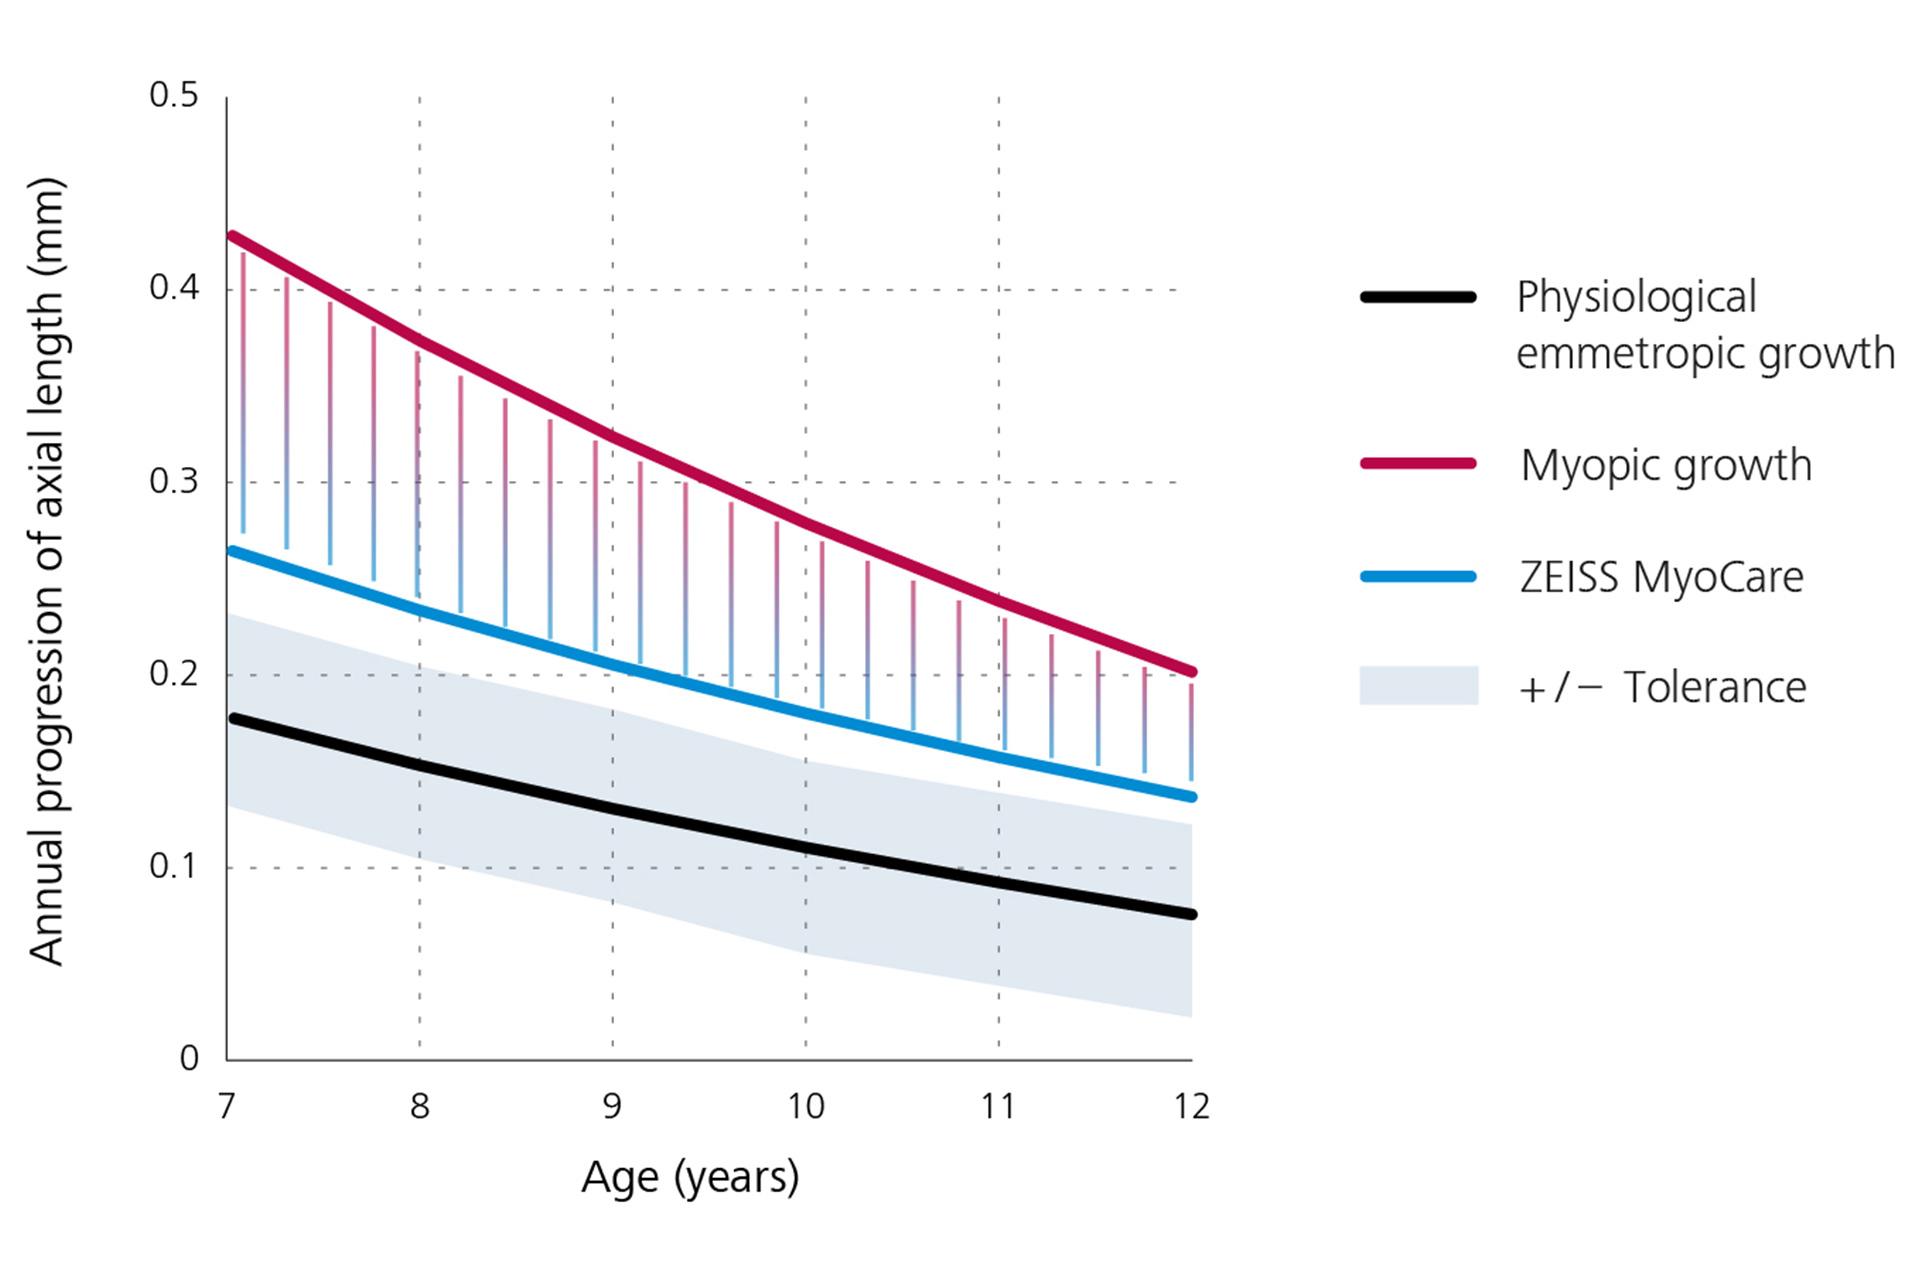 En linjegraf som viser årlig progresjon av aksial lengde som viser fysiologisk emmetropisk vekst i svart nederst, nærsynt vekst i rødt på toppen, og resultatene for ZEISS MyoCare-glass i blått i midten. Fra denne grafen kan det utledes at progresjon av nærsynthet er under den nærsynte vekstkurven hvis ZEISS MyoCare-glass brukes.  